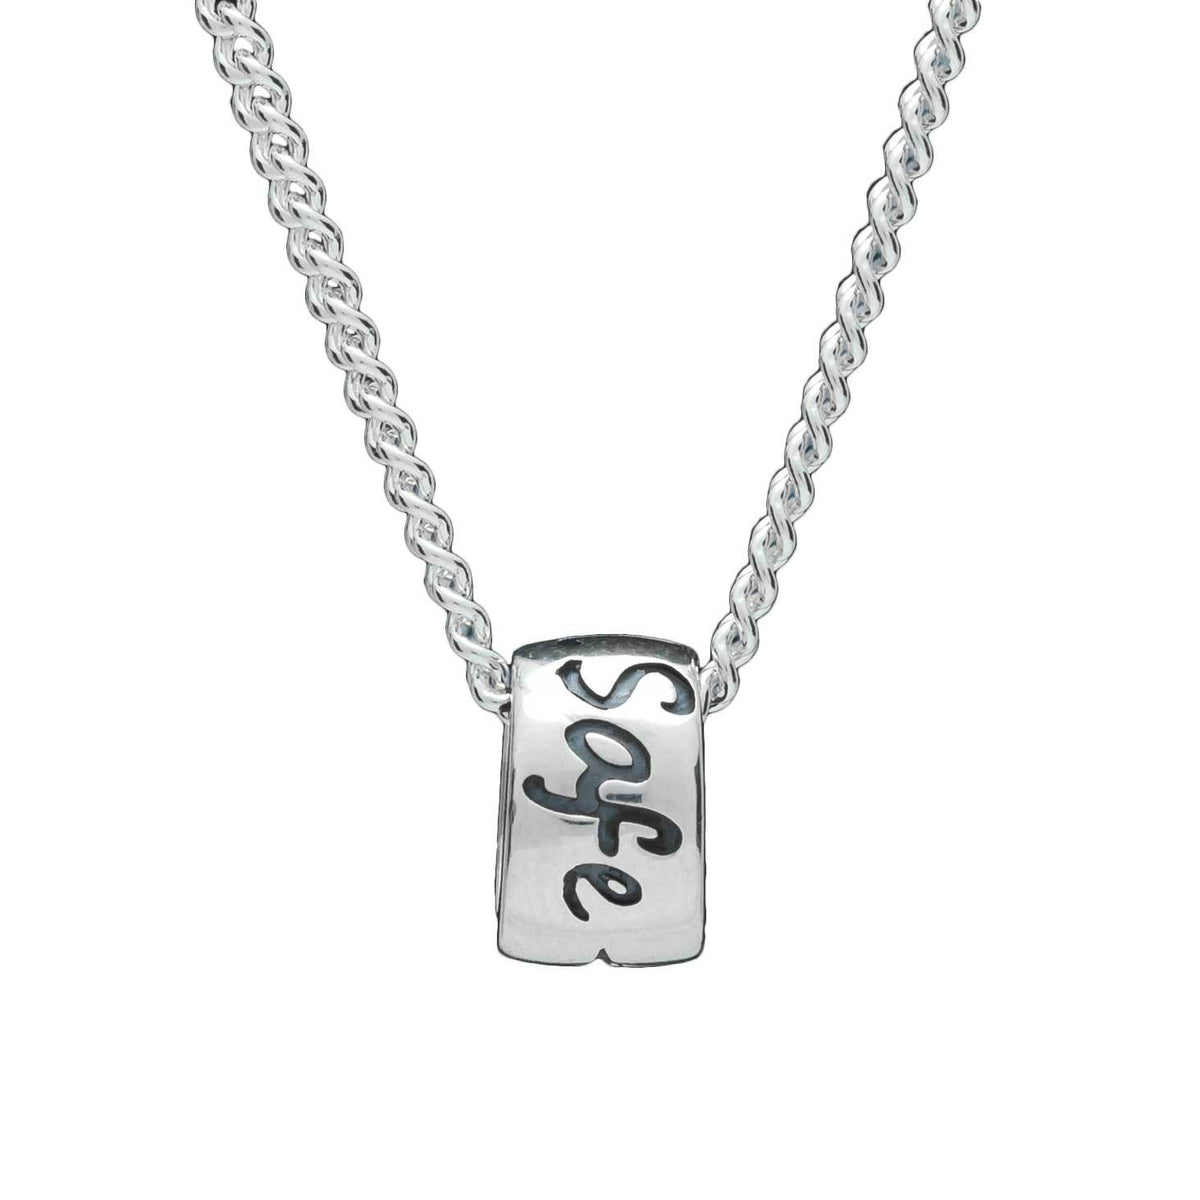 Travel Safe Silver Necklace - alternative St Christopher Pendant for men &amp; women handmade in the UK